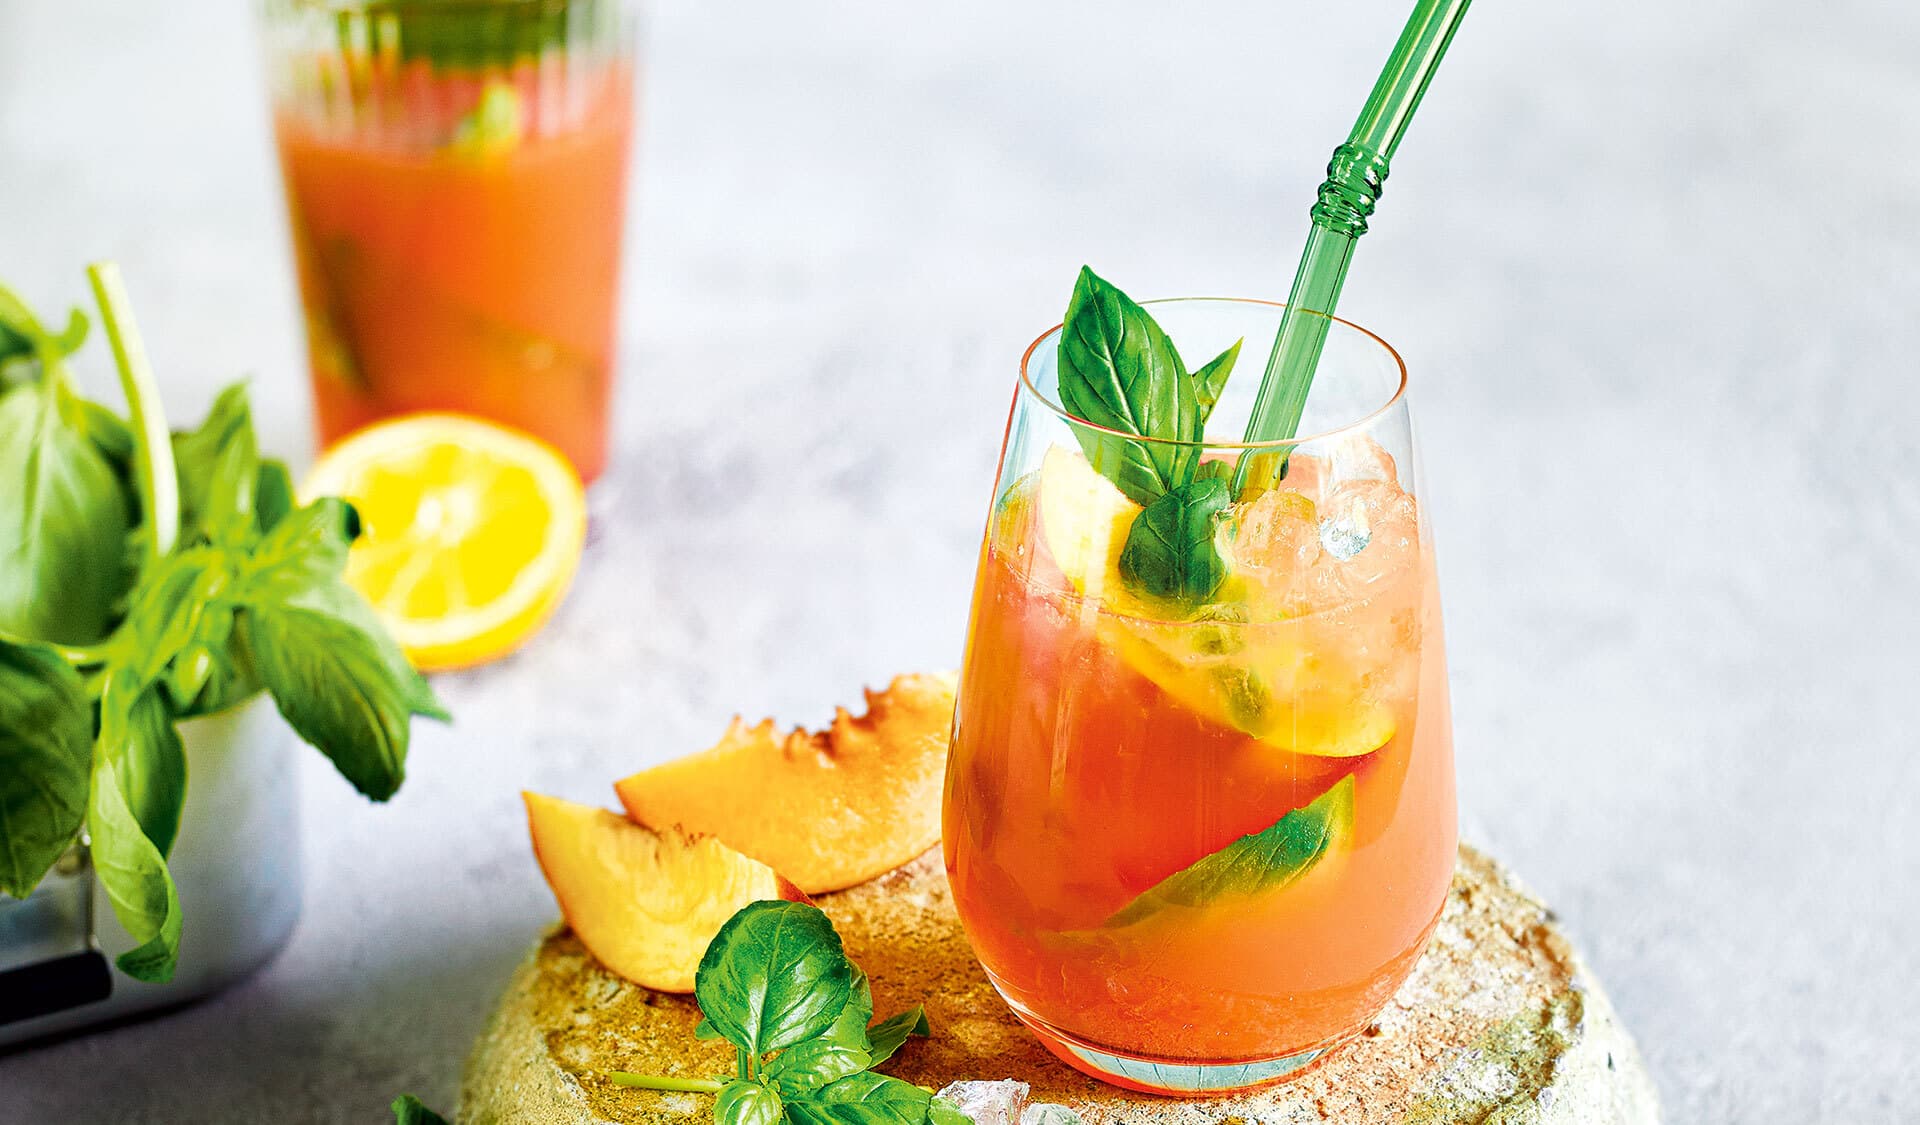 Glas mit orangenfarbenem Cocktail, garniert mit Basilikum, mit grünem Trinkhalm